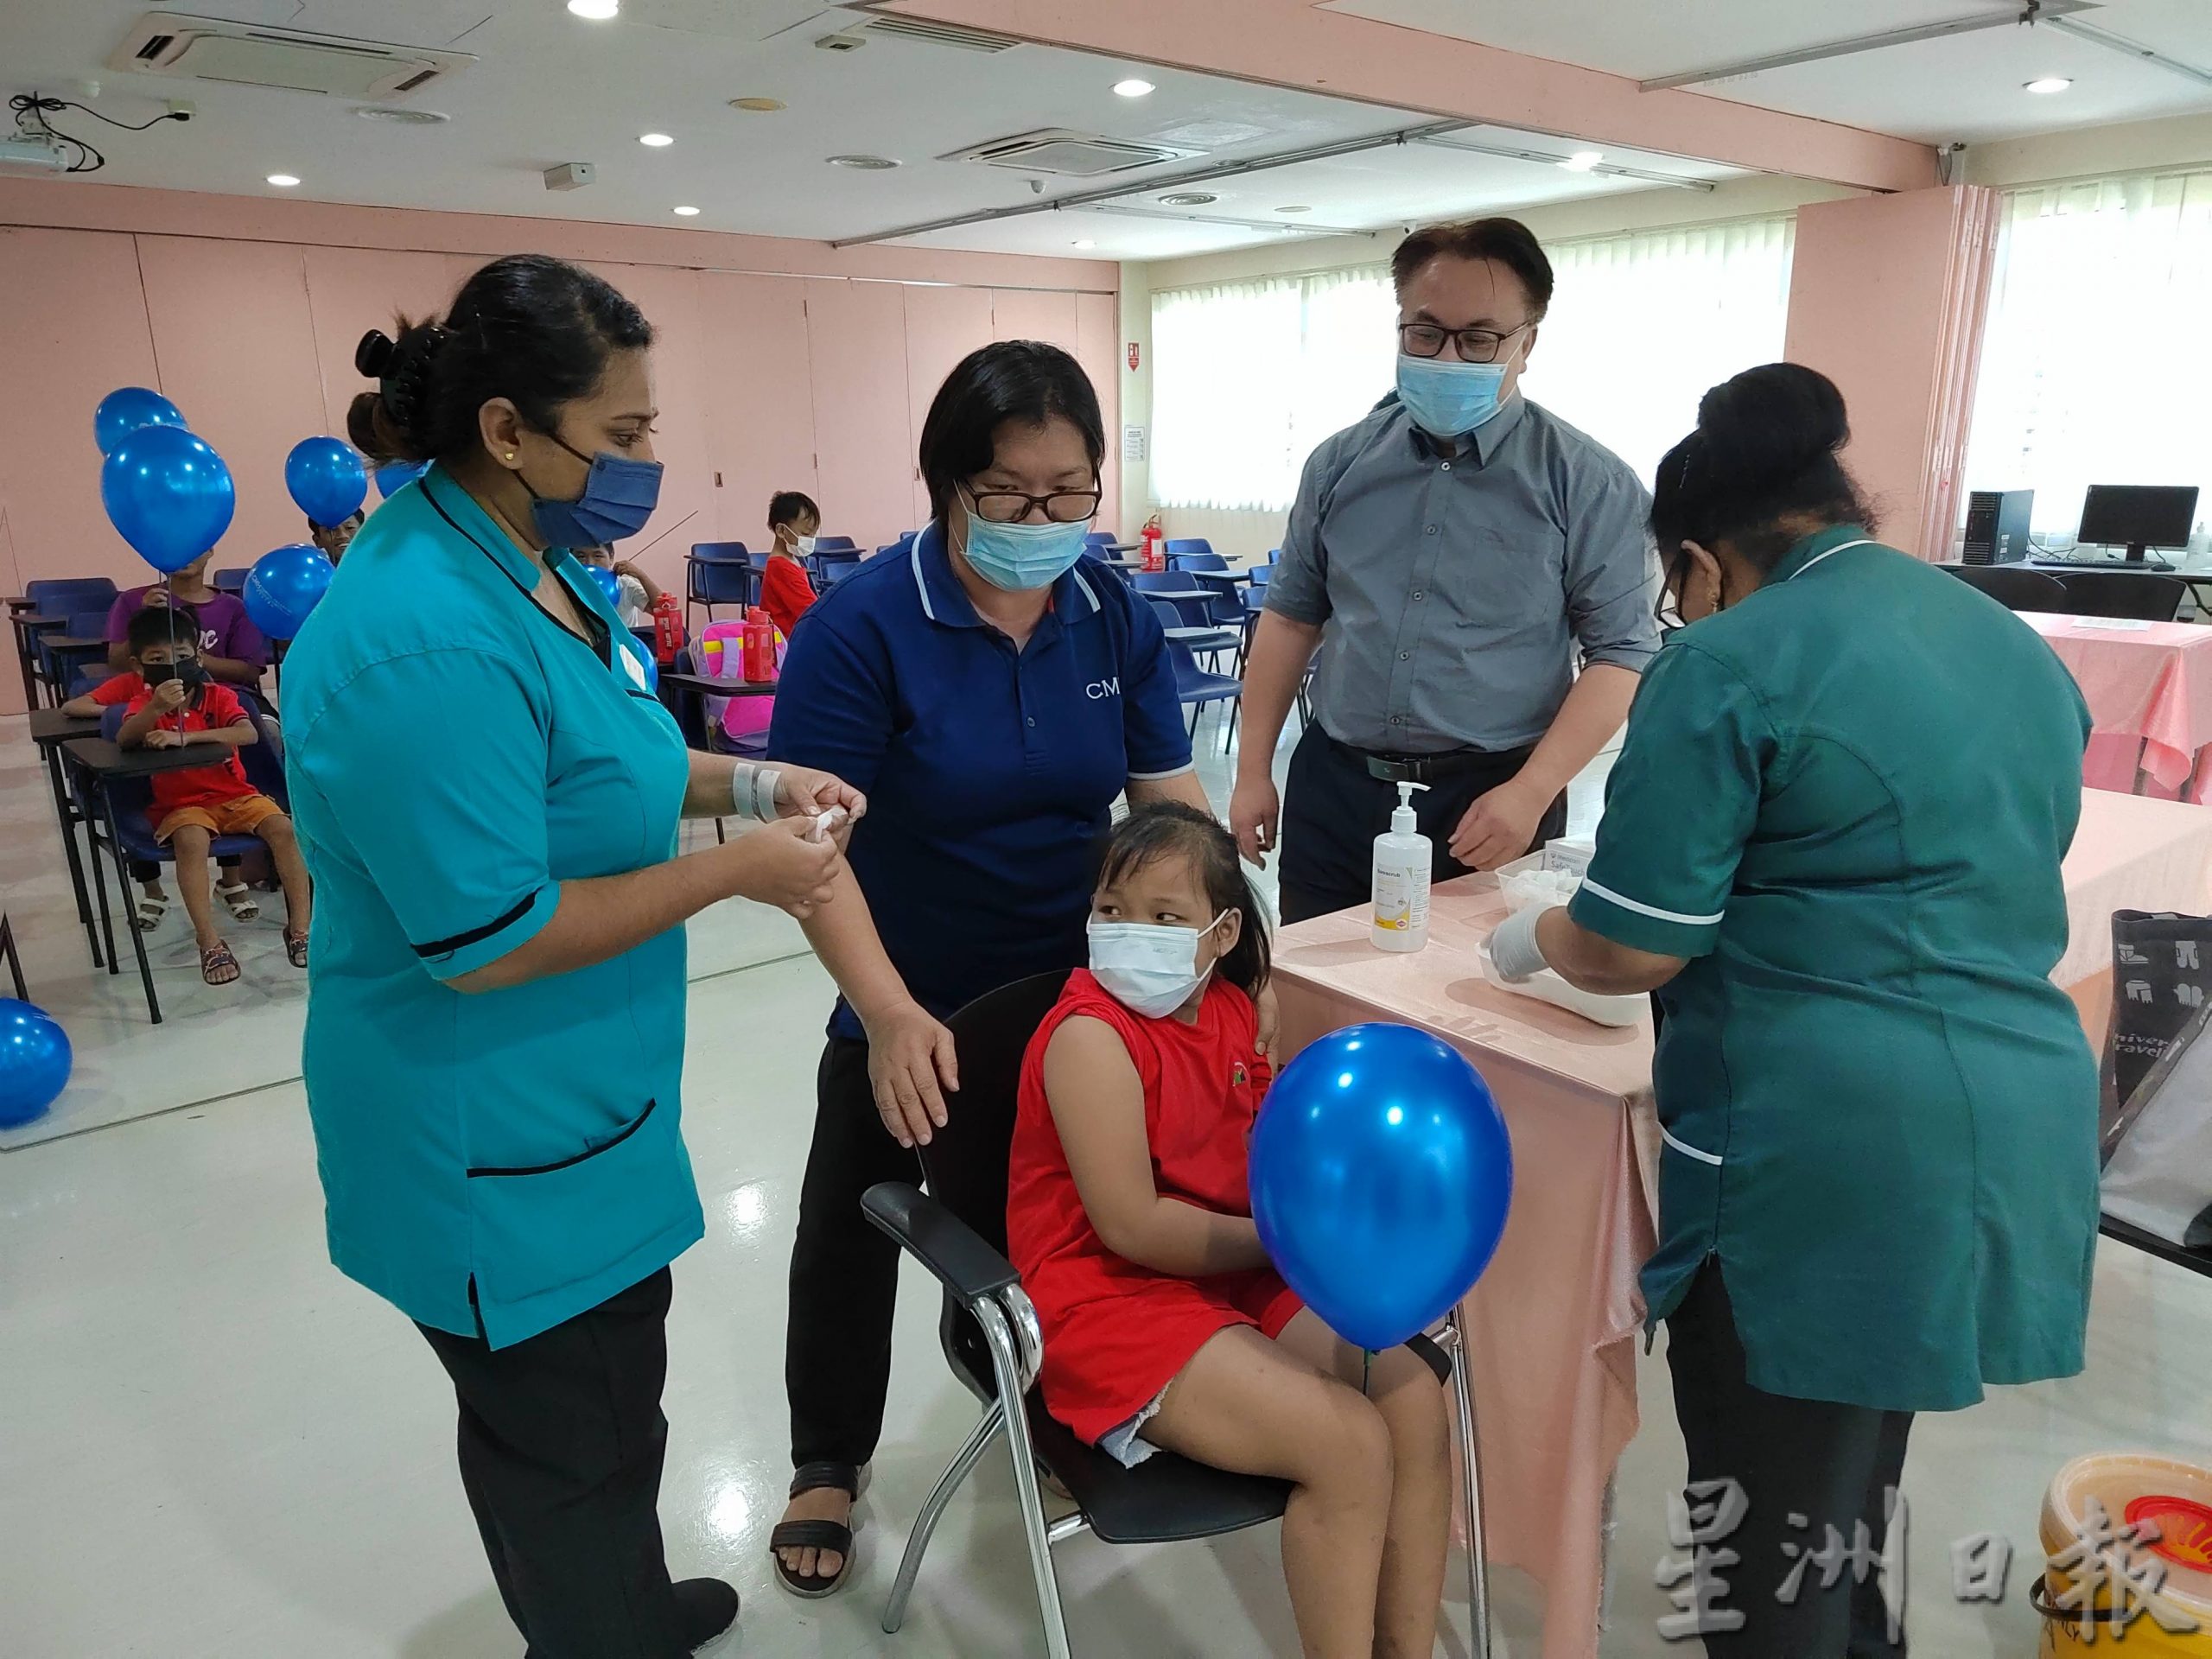 NS芙蓉／森华人接生会为43缅甸难民儿童及3老师守护健康